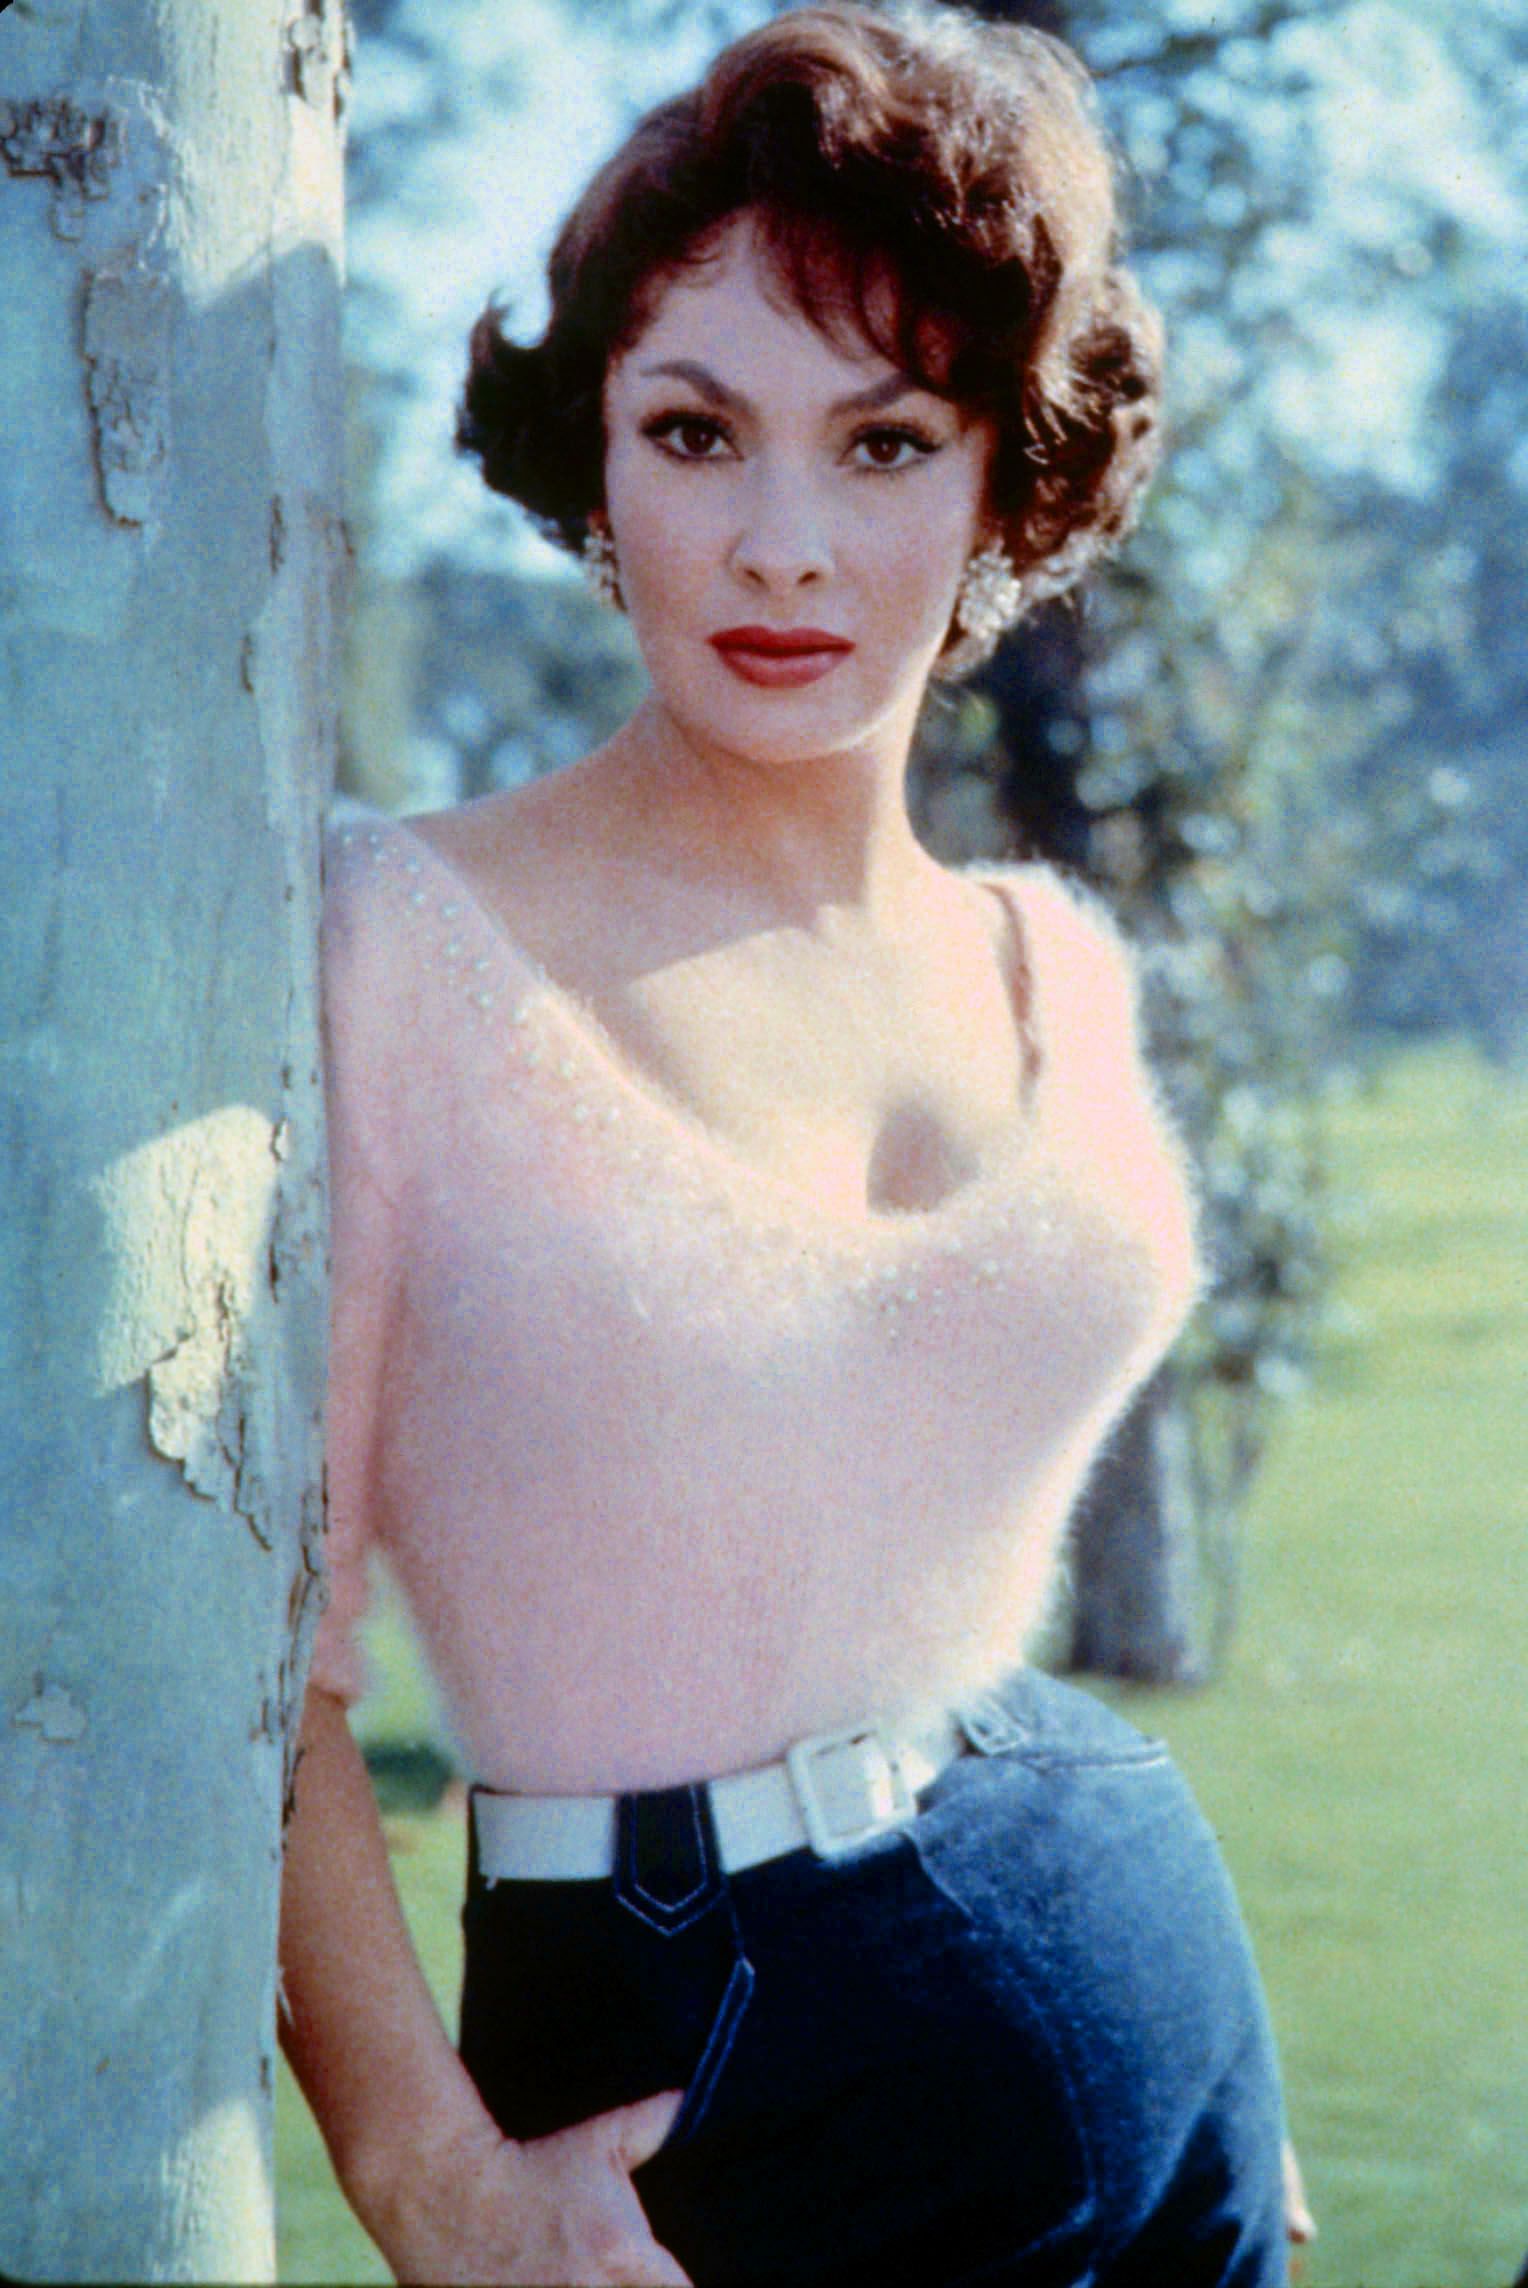 Actress Gina Lollobrigida 1950s Sweater Girl Classic